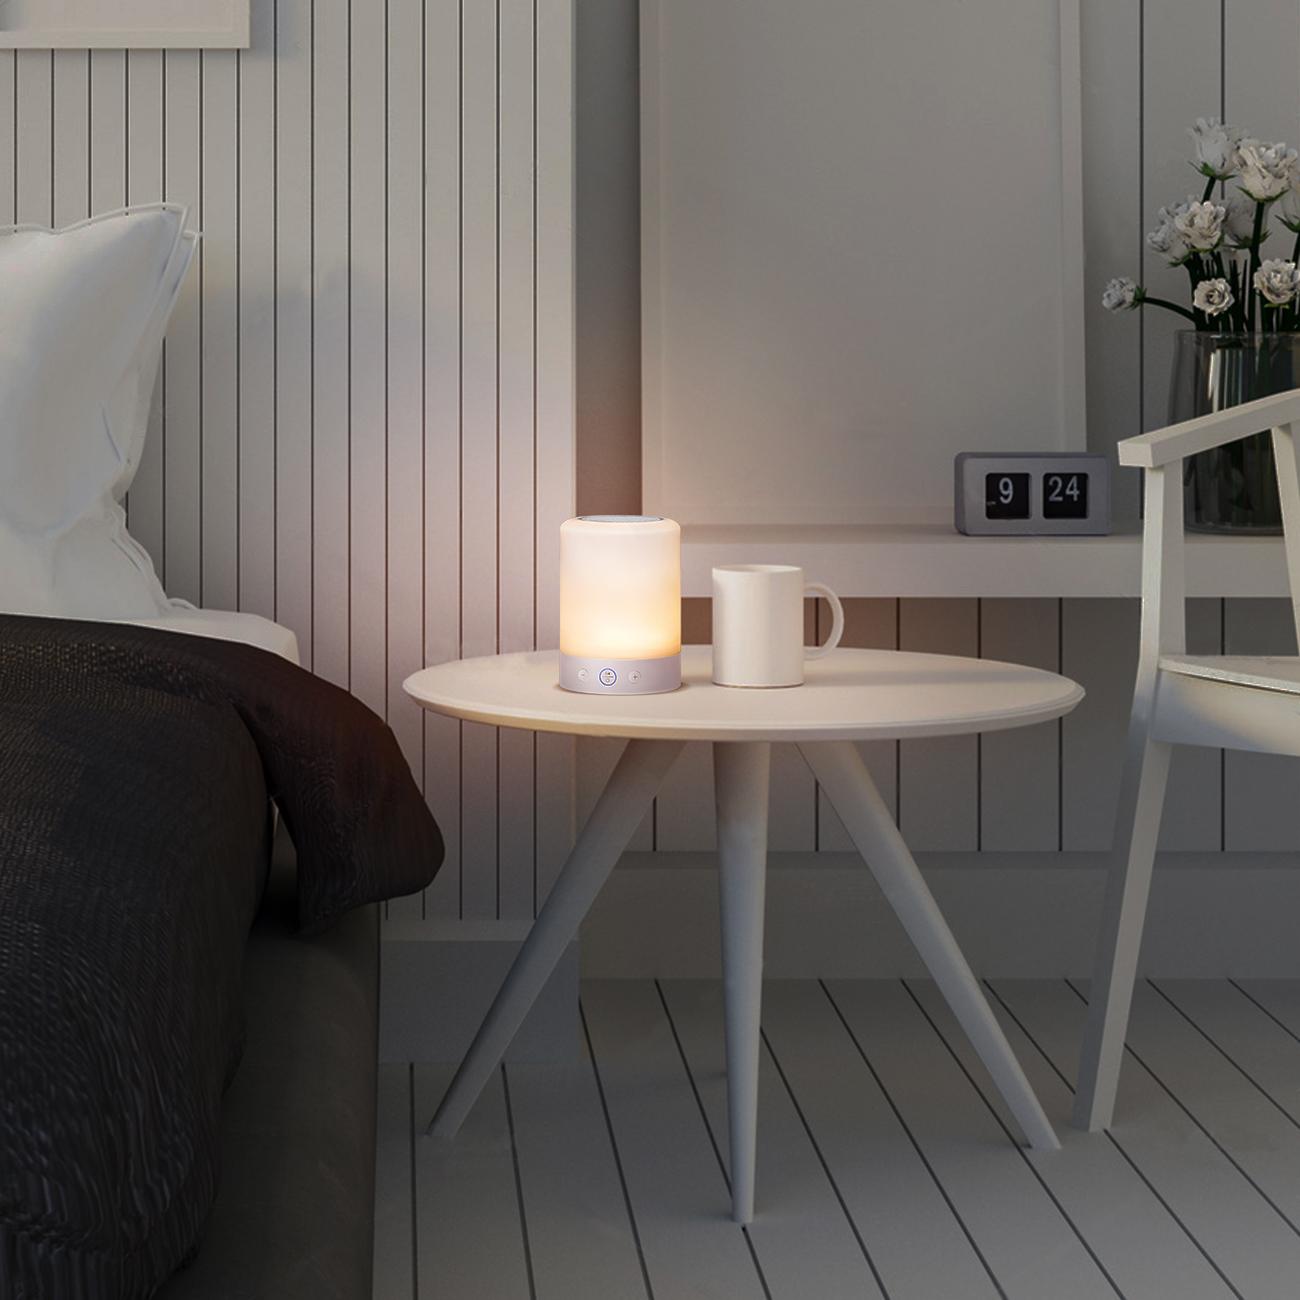 Stimmungsvolle LED-Leuchte im Schlafzimmer #nachttischleuchte ©F&M TECHNOLOGY GmbH